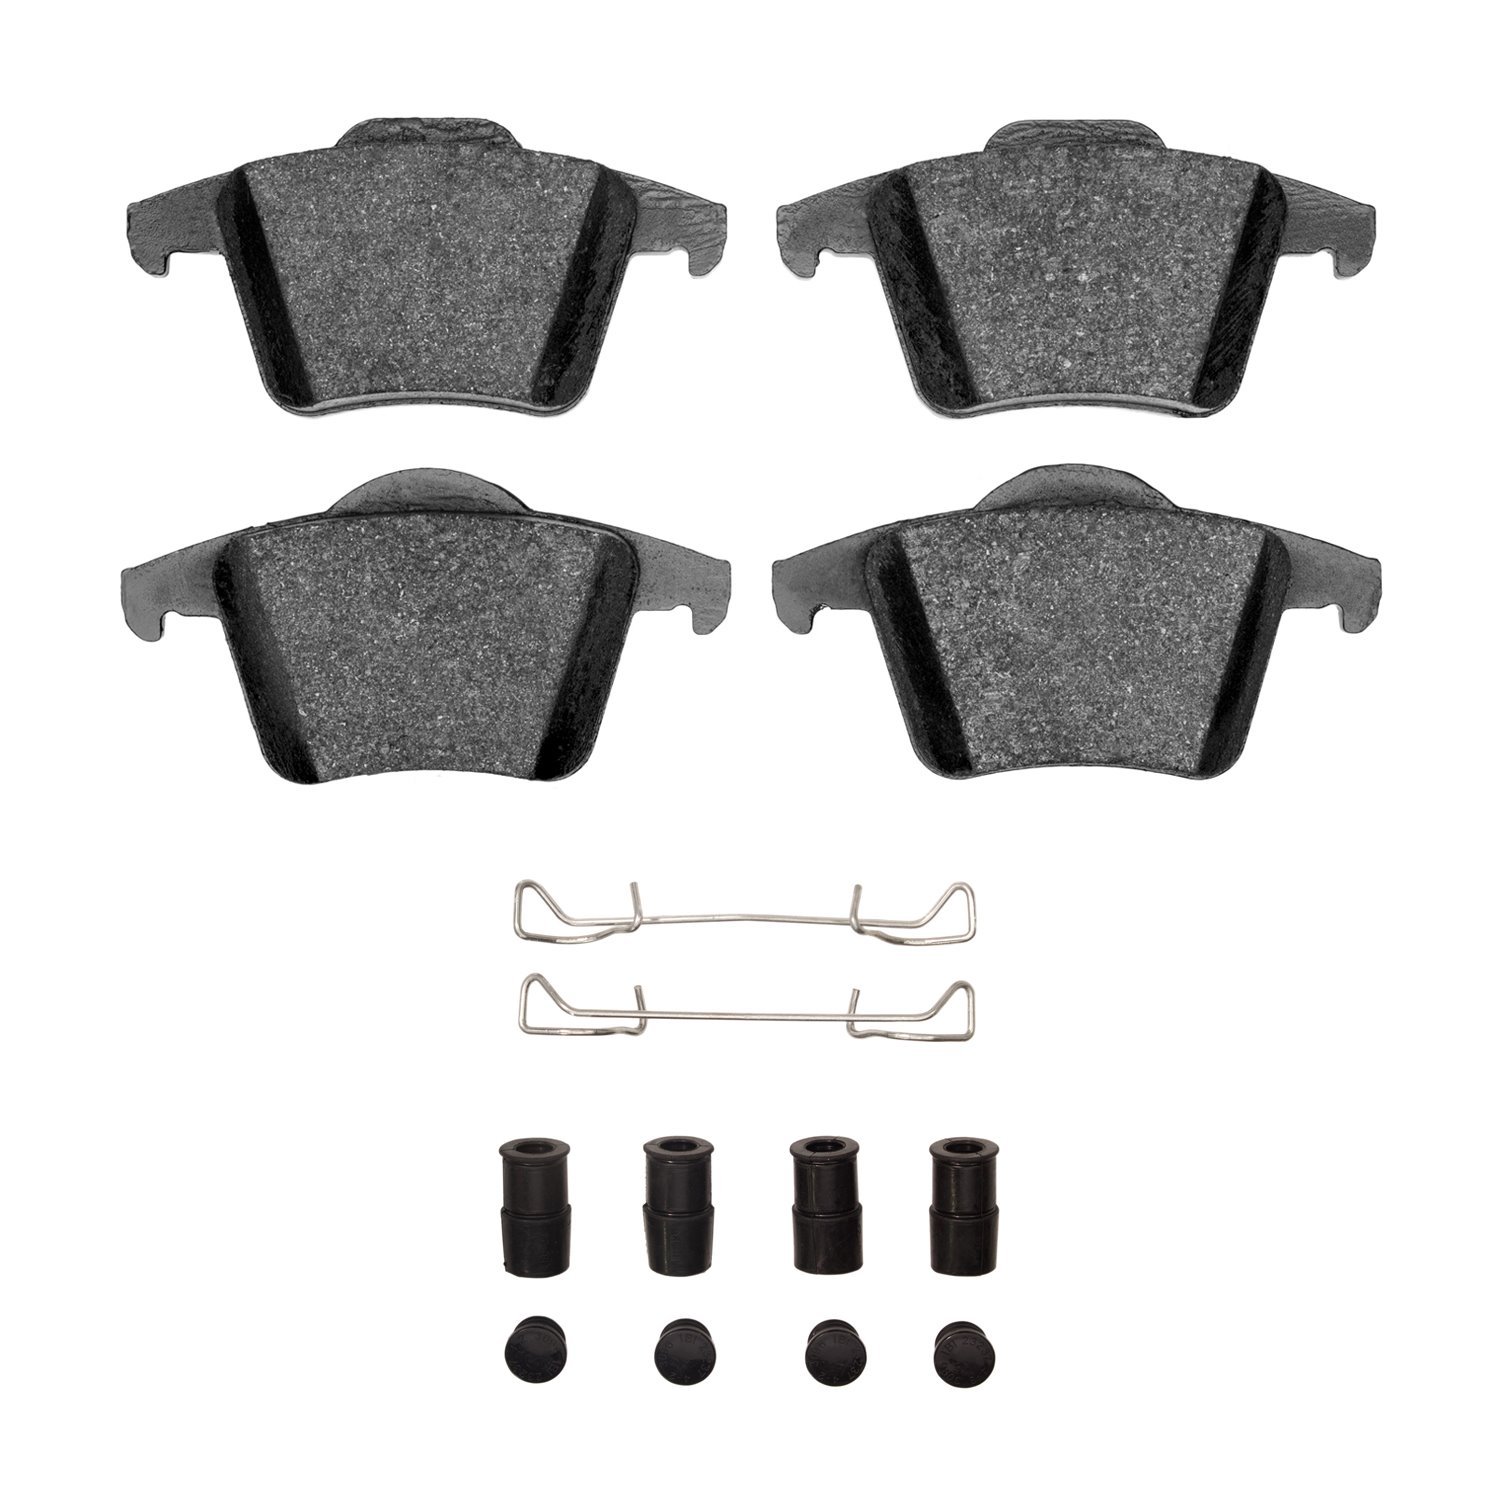 1311-0980-01 3000-Series Semi-Metallic Brake Pads & Hardware Kit, 2003-2014 Volvo, Position: Rear